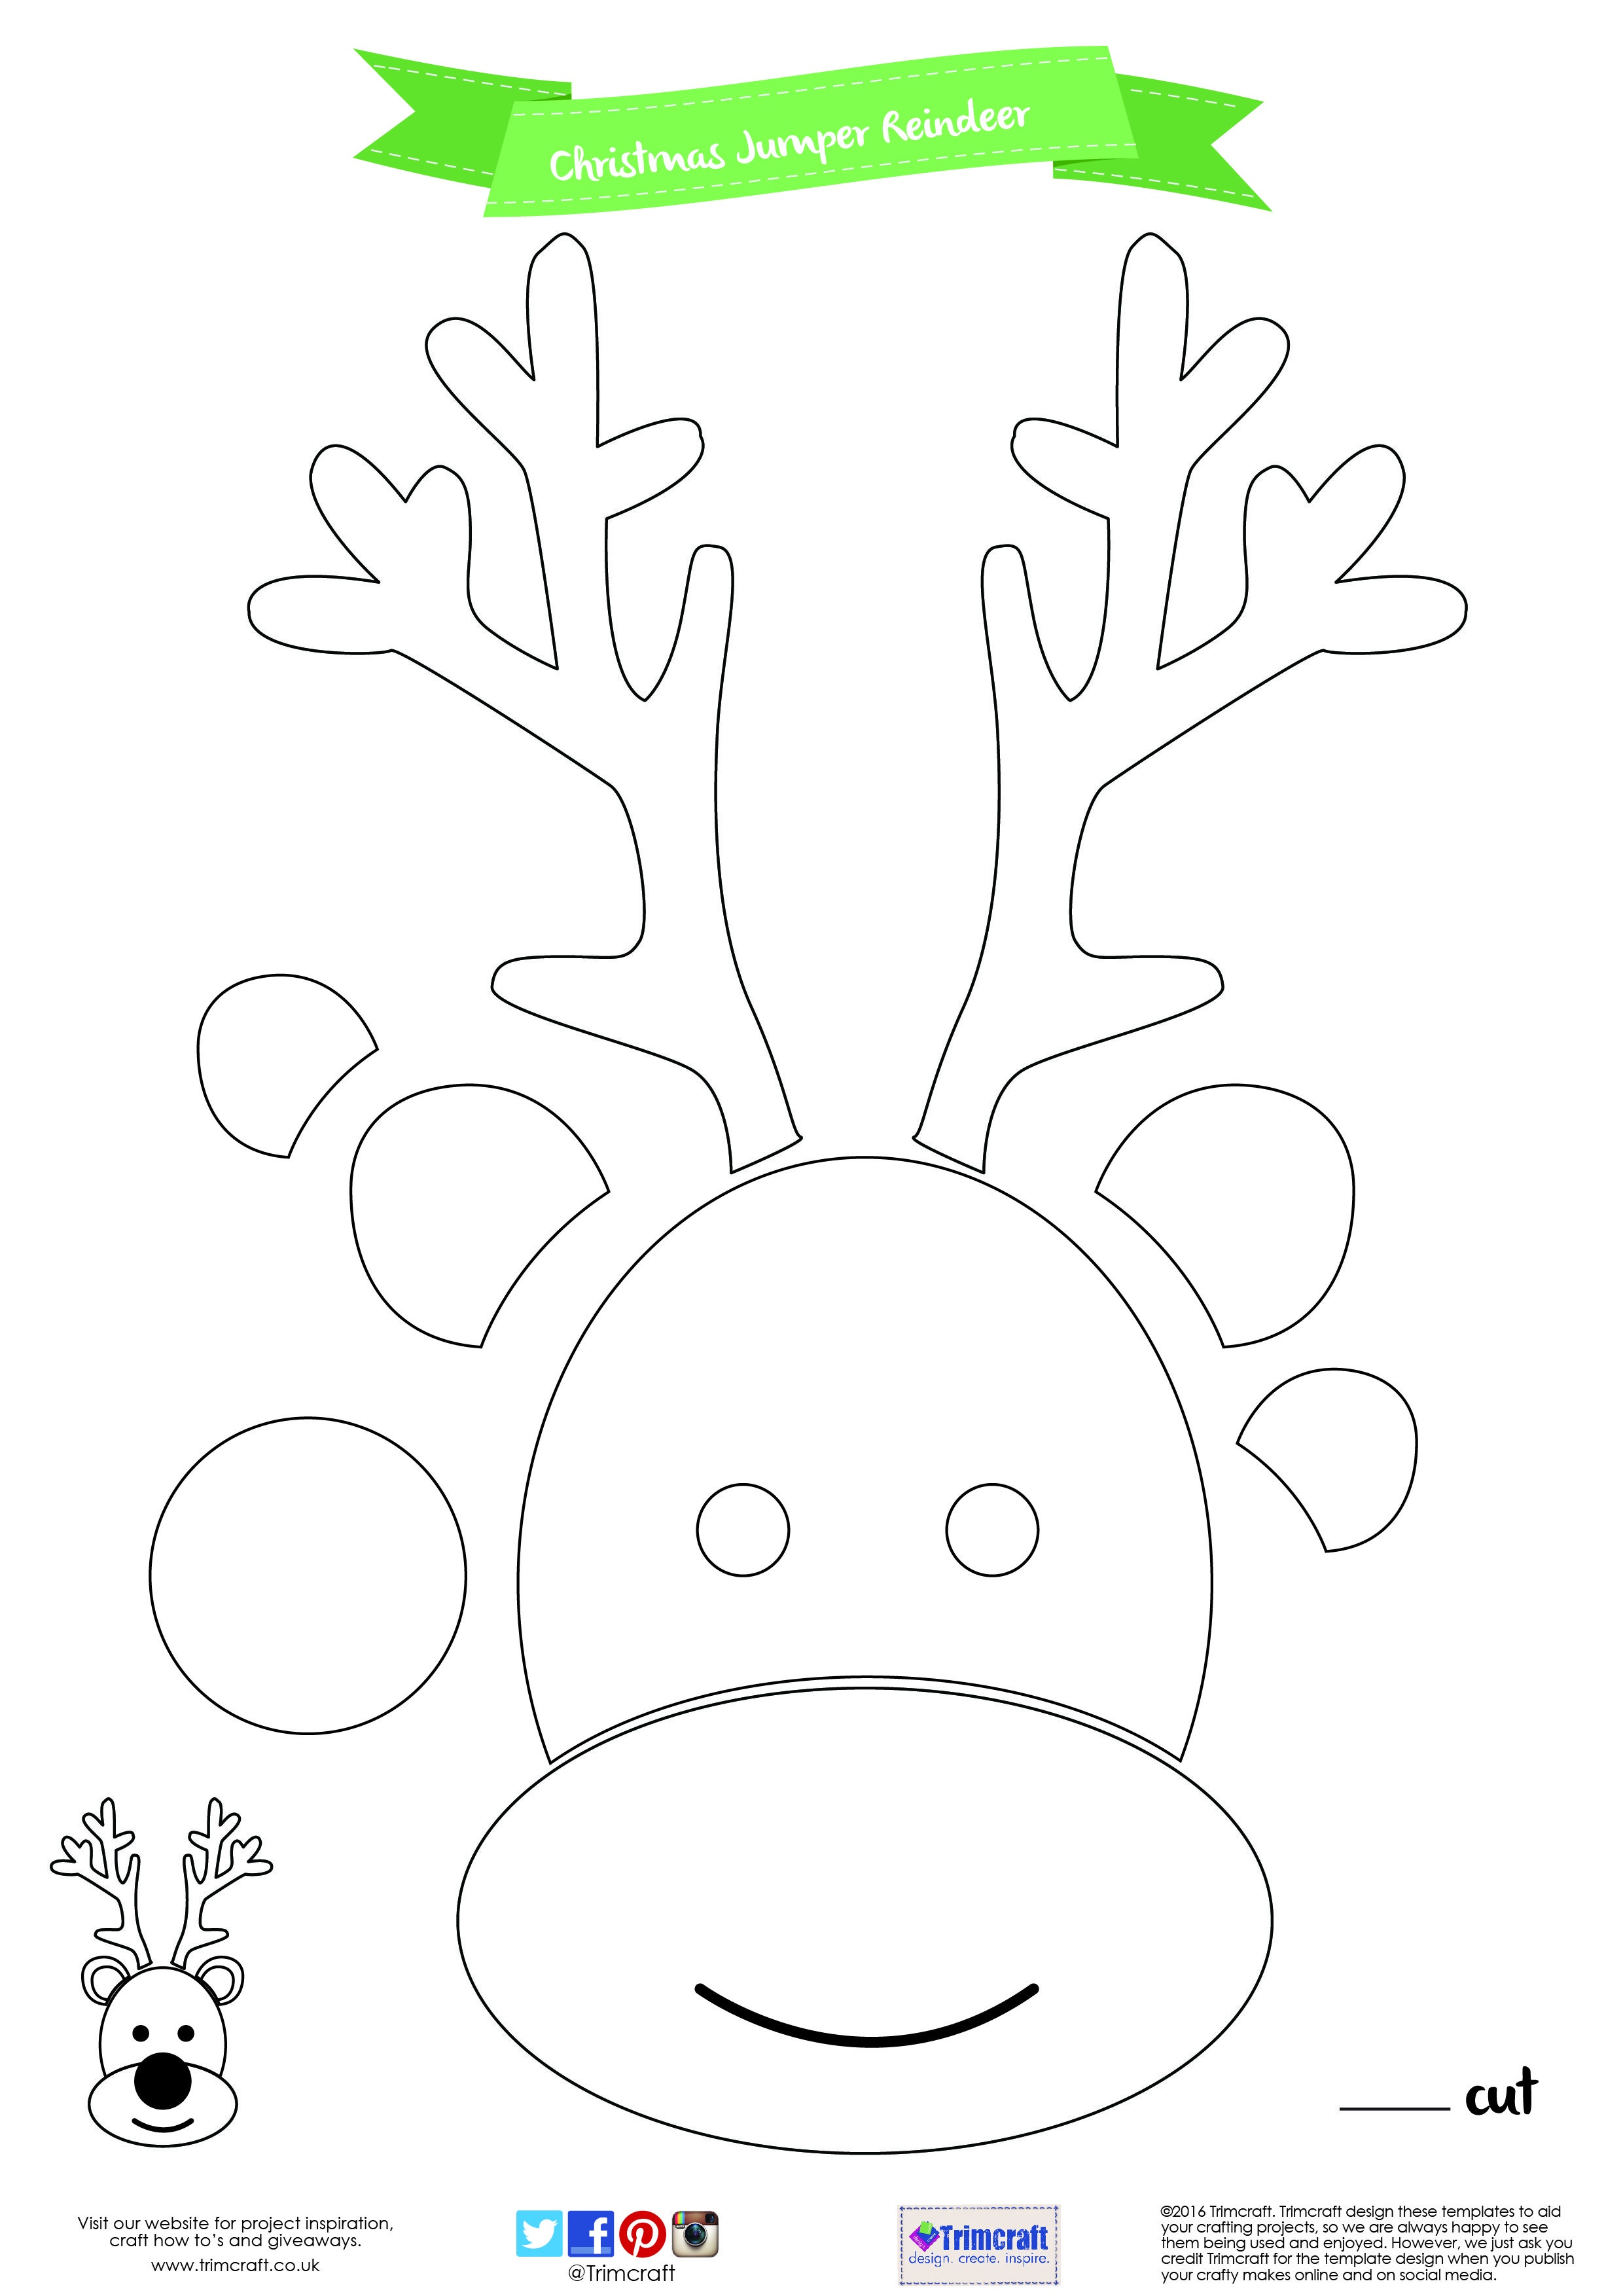 Diy Christmas Jumper Tutorial With Free Printable Template | Cut - Reindeer Antlers Template Free Printable